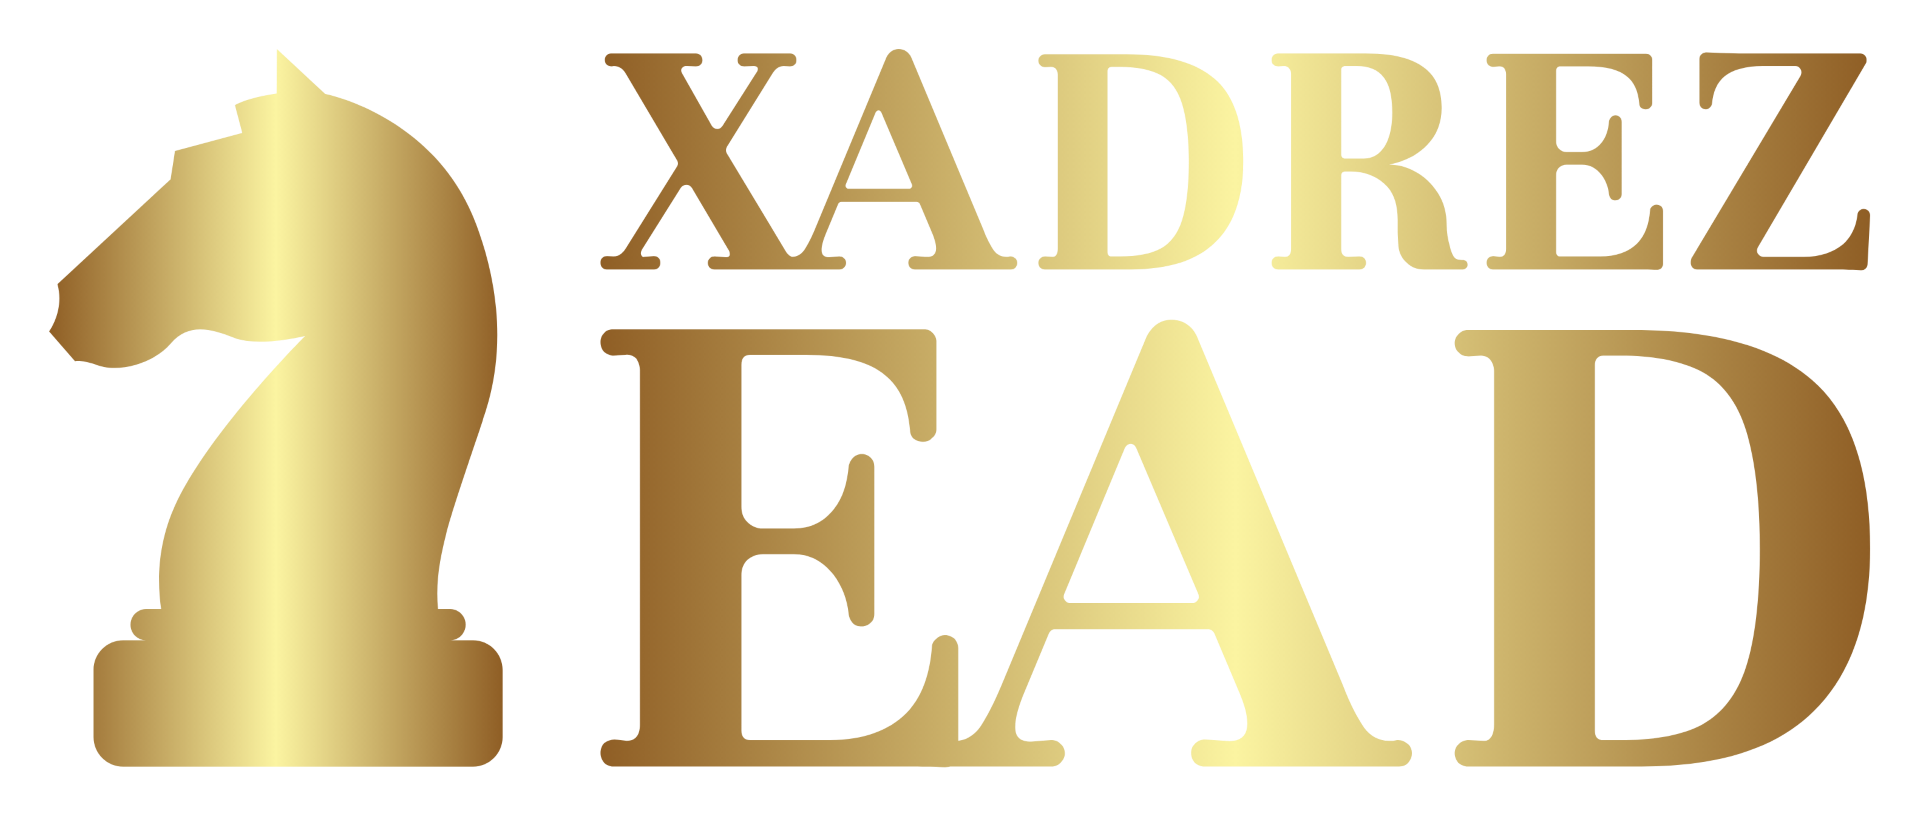 EAD Cursos Grátis: Curso Grátis de Xadrez